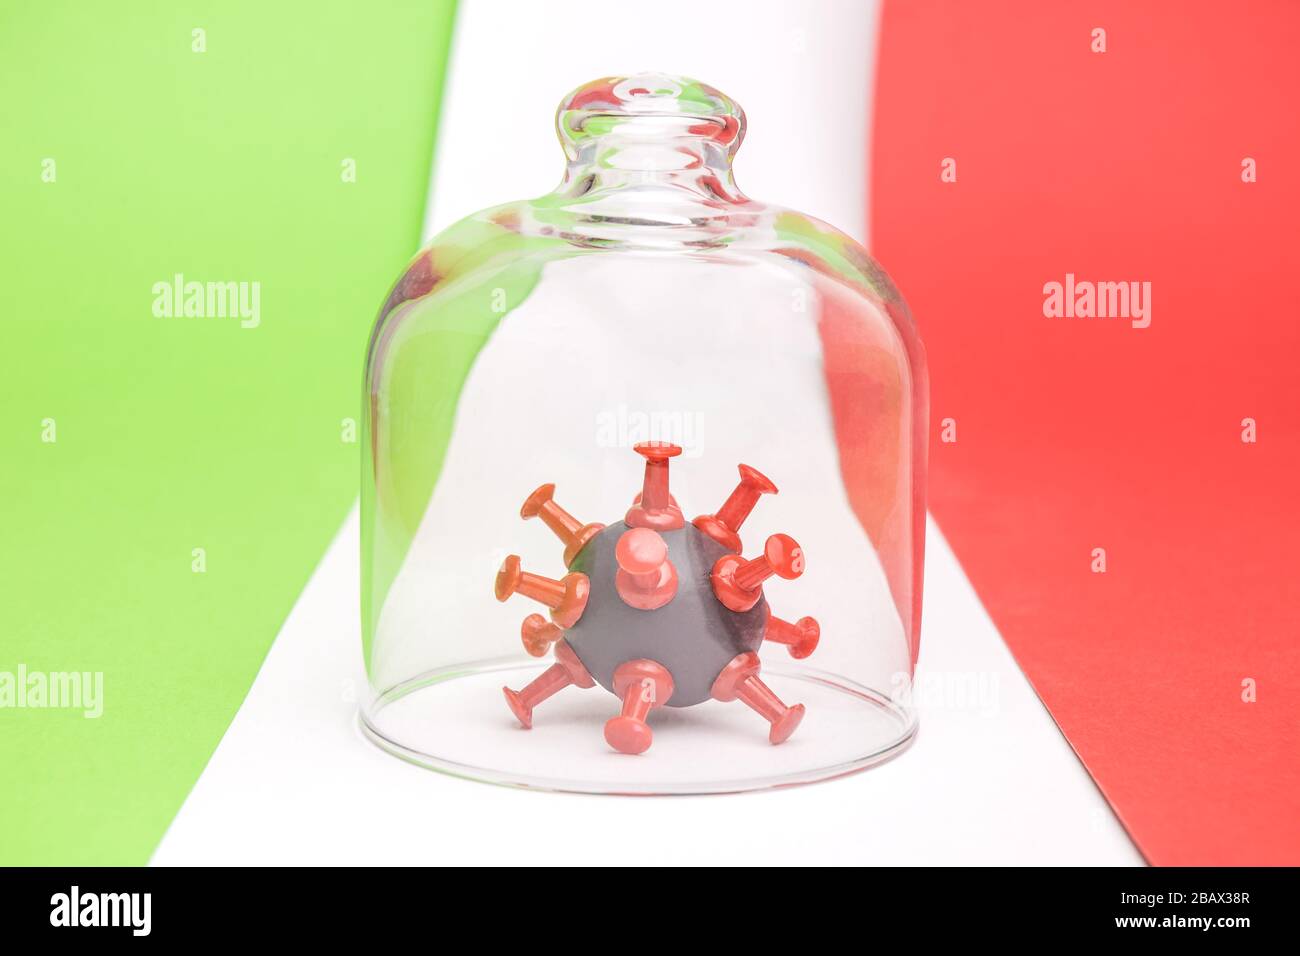 Nahaufnahme des Bakterienzellmodells von Coronavirus in Quarantäne auf italienischer Flagge minimales kreatives Gesundheitskonzept. Stockfoto